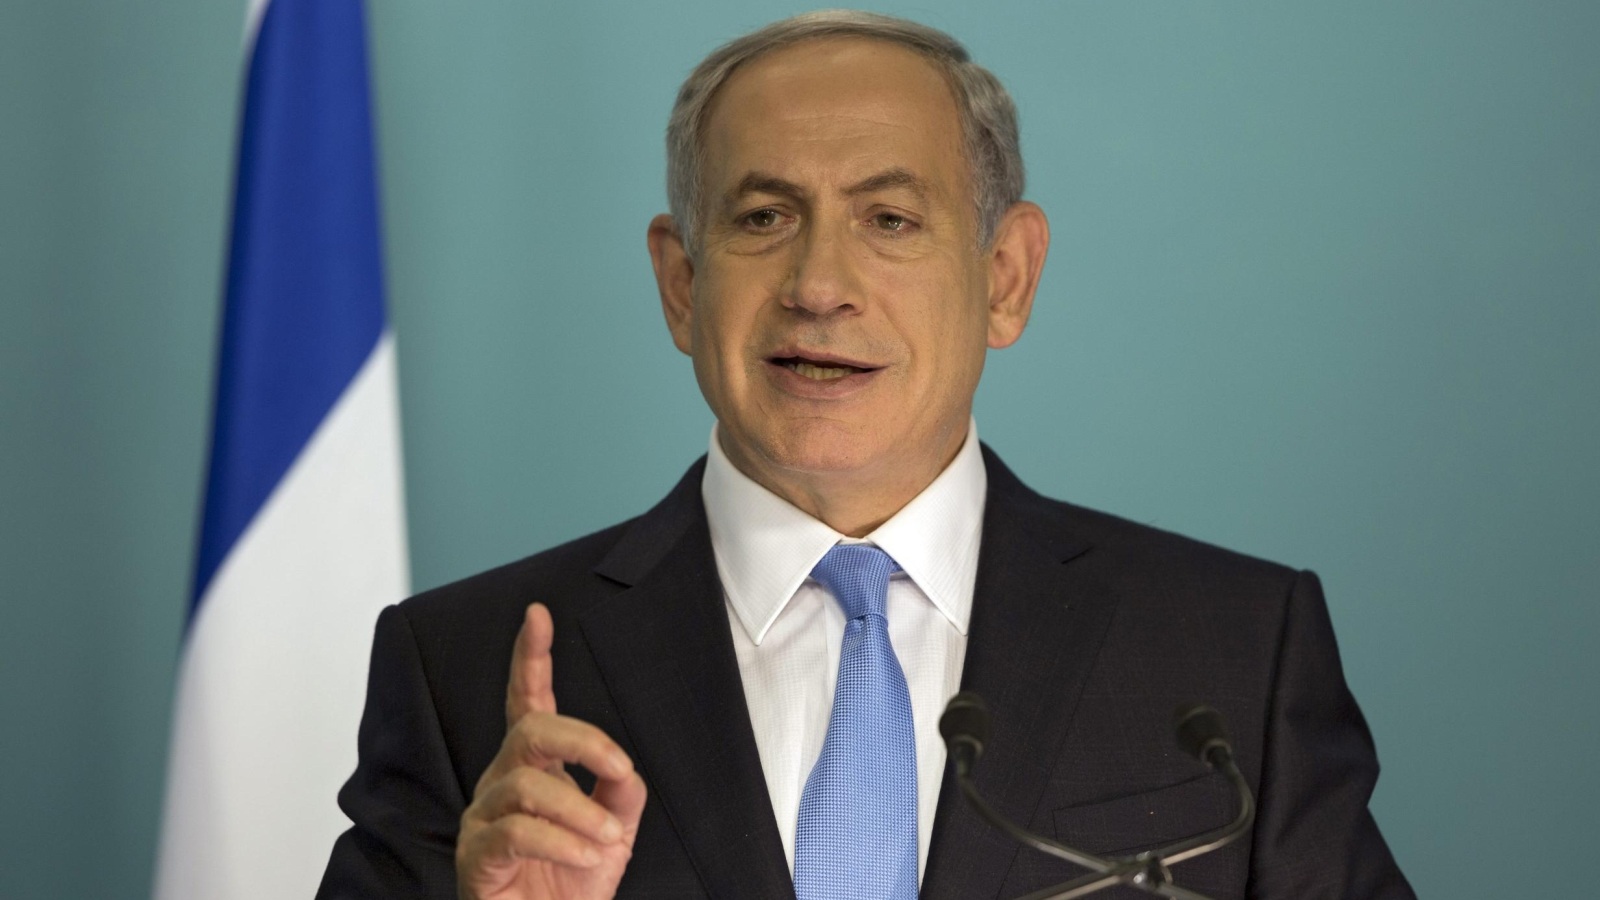 ‪نتنياهو يؤكد حق إسرائيل في الدفاع عن نفسها وينفي استخدام القوة المفرطة‬ (الأوروبية)